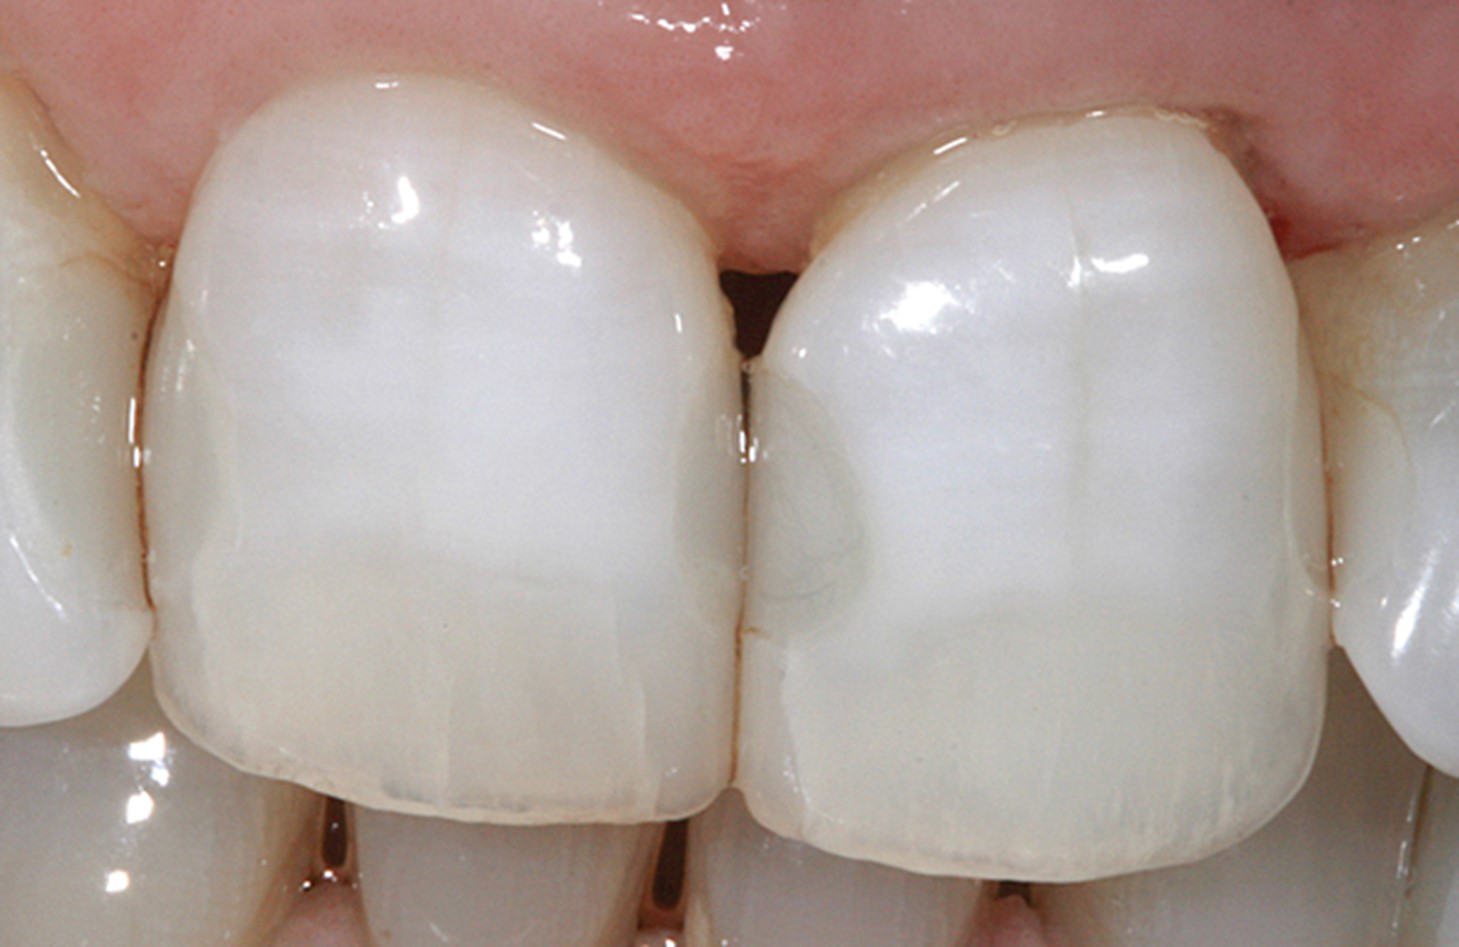 مشکلات بعد از سفید کردن دندان